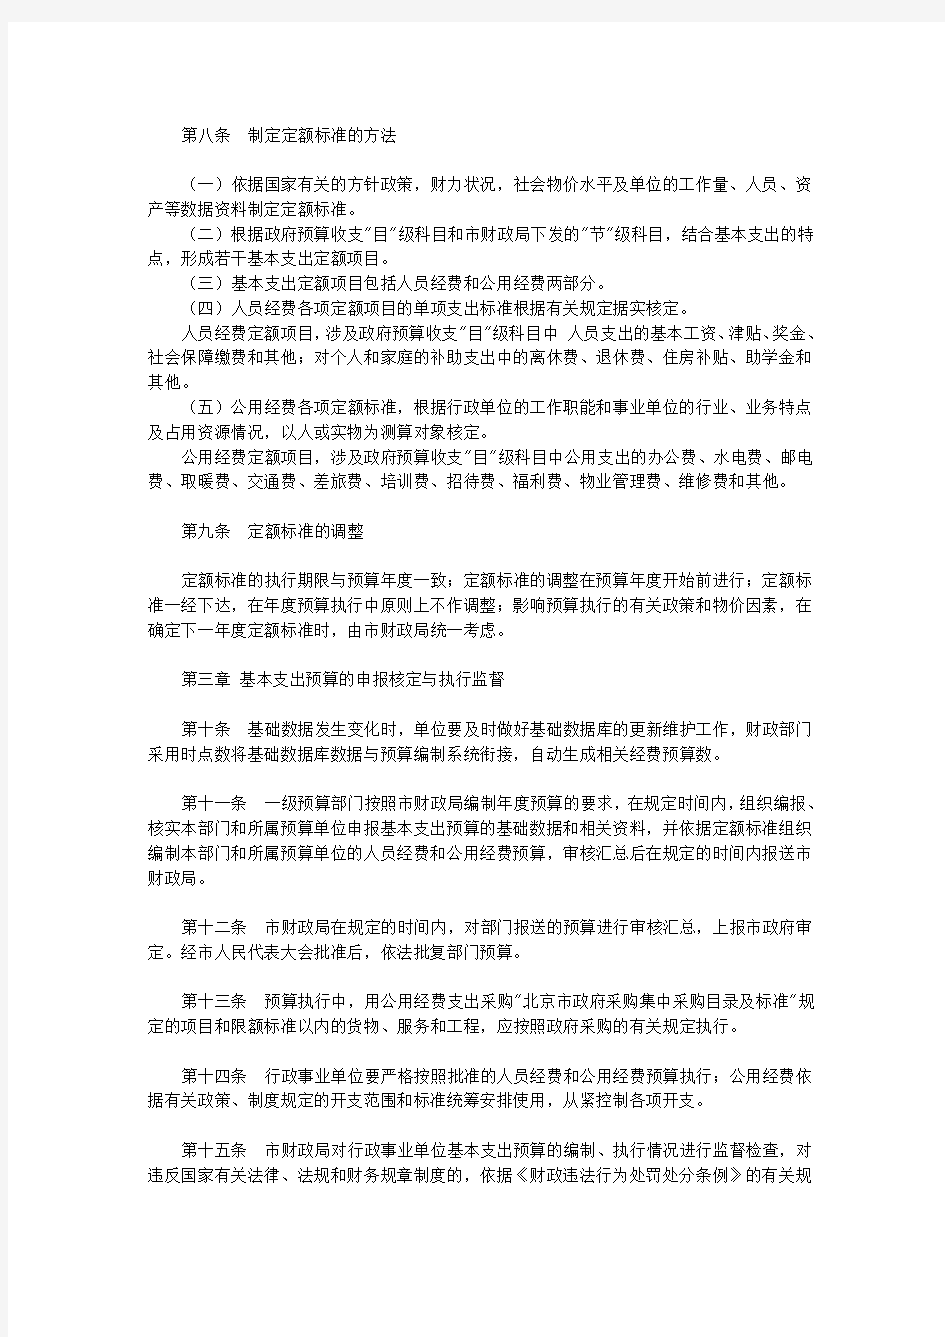 北京市市级基本支出预算管理办法